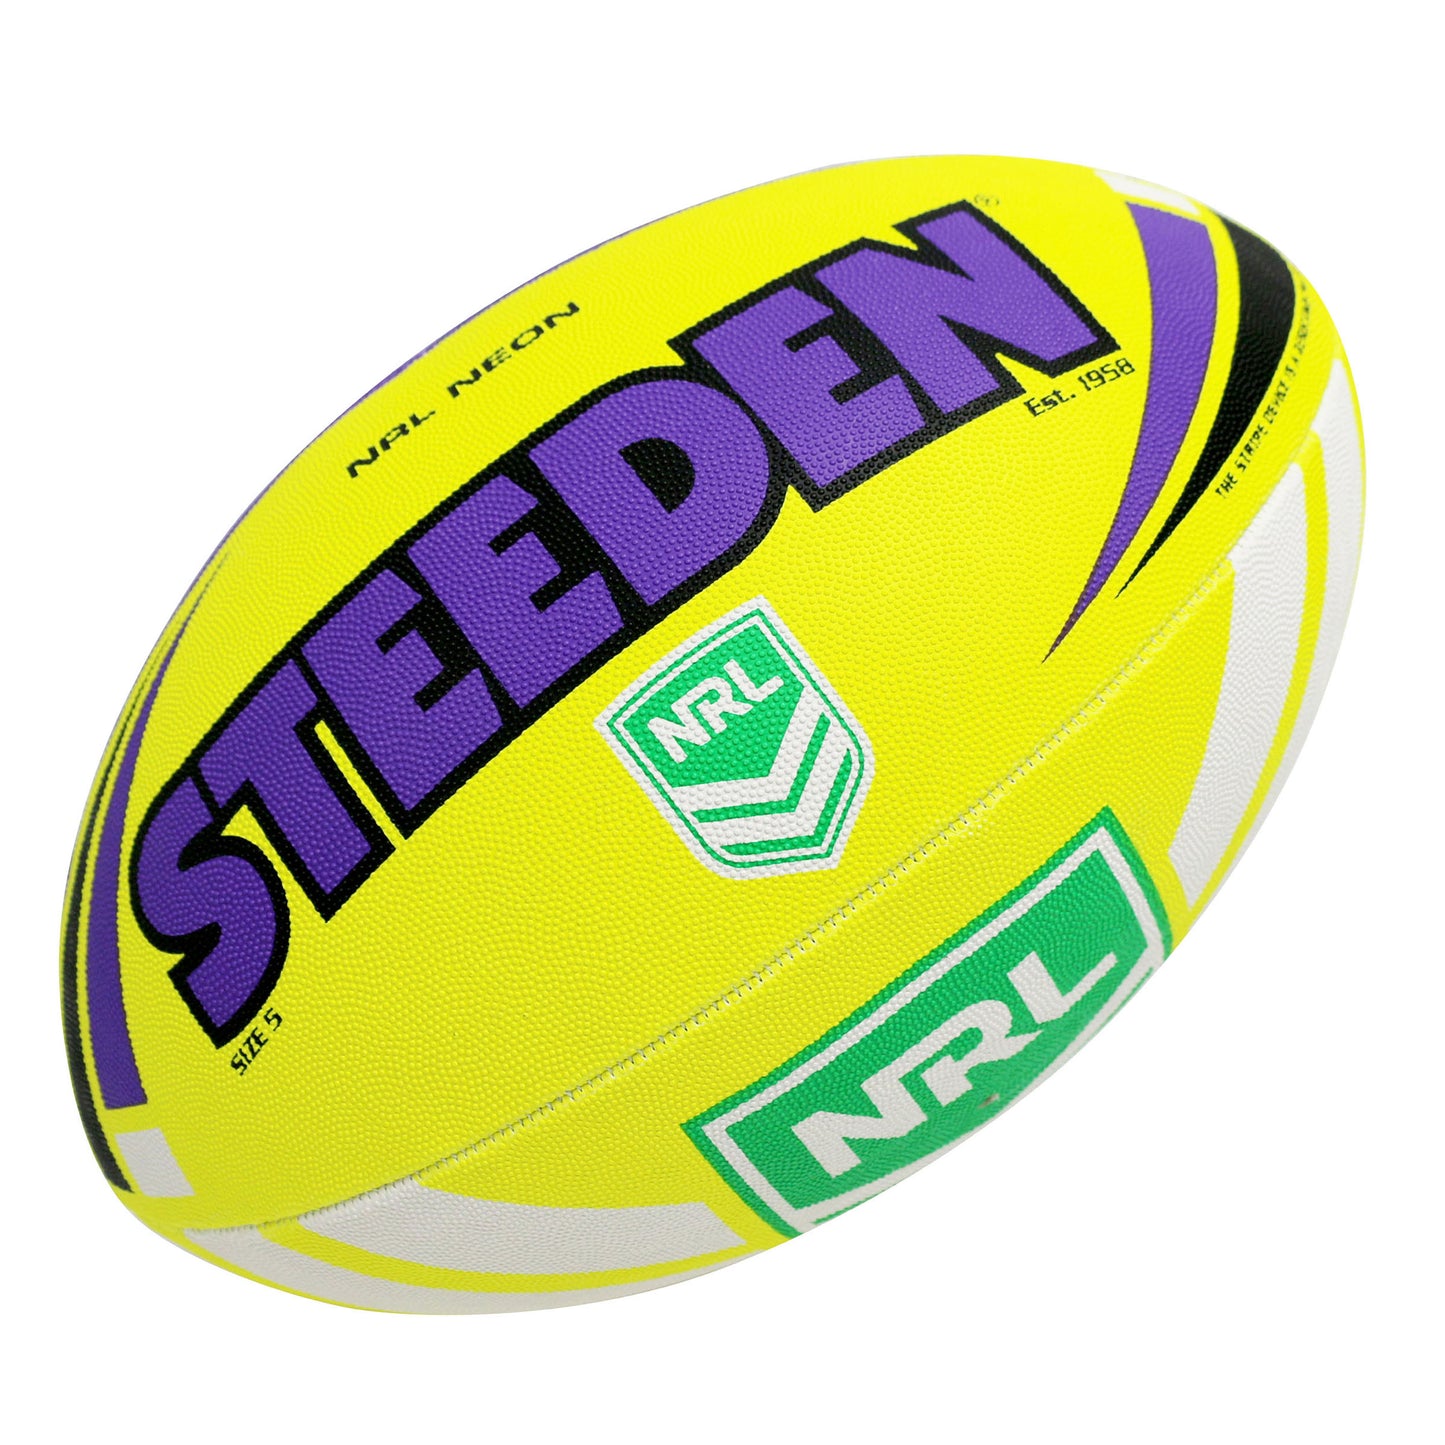 Steeden Neon Football (Size 5) Purple/Yellow